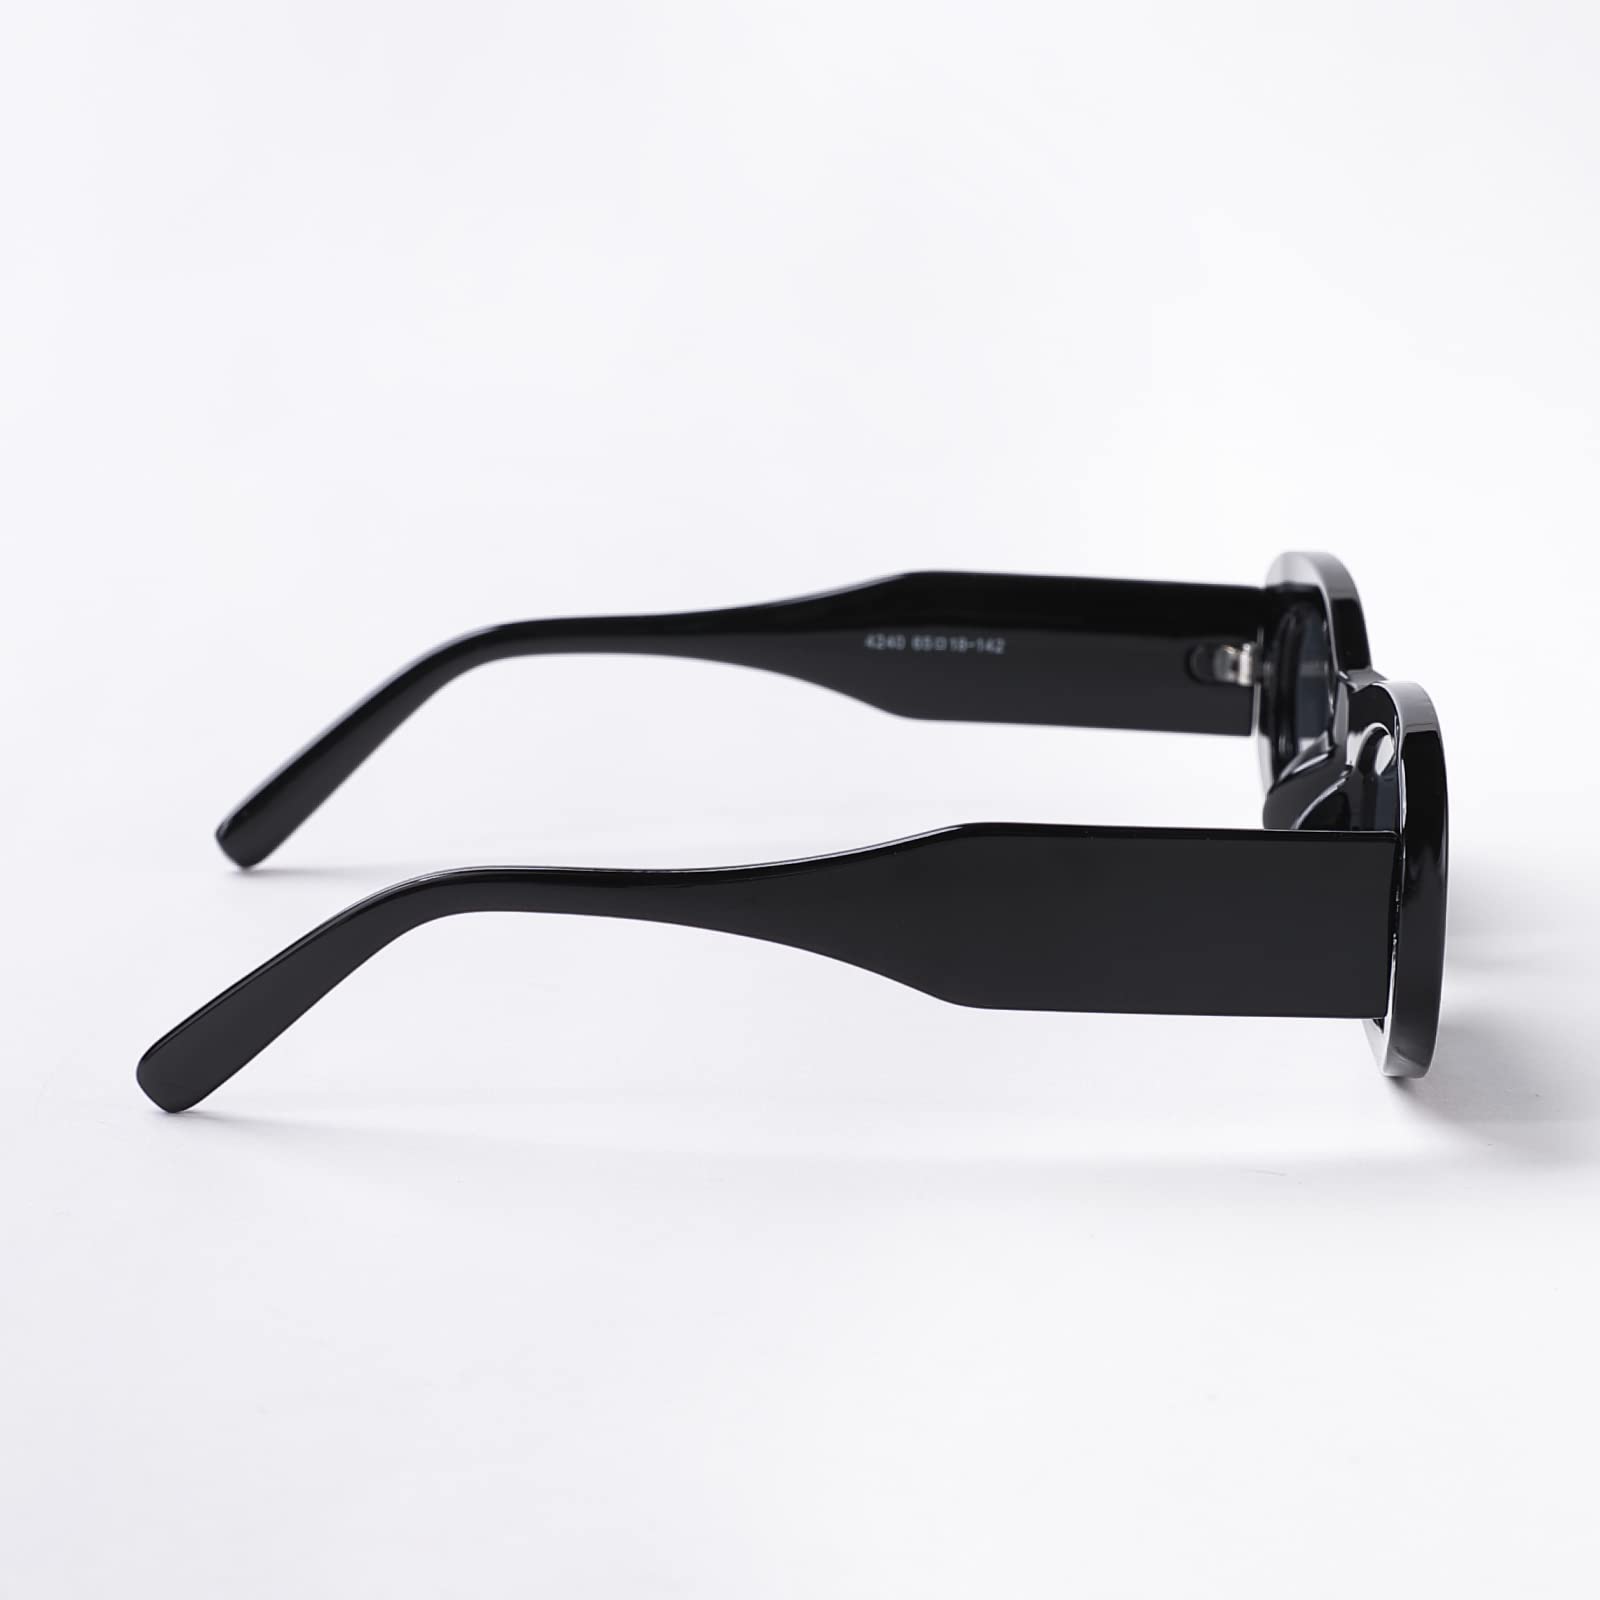 Intellilens Rectangular UV Protection Sunglasses For Women - KENDALL JENNER Sunglasses | Goggles for Women (Black) 65-18-142